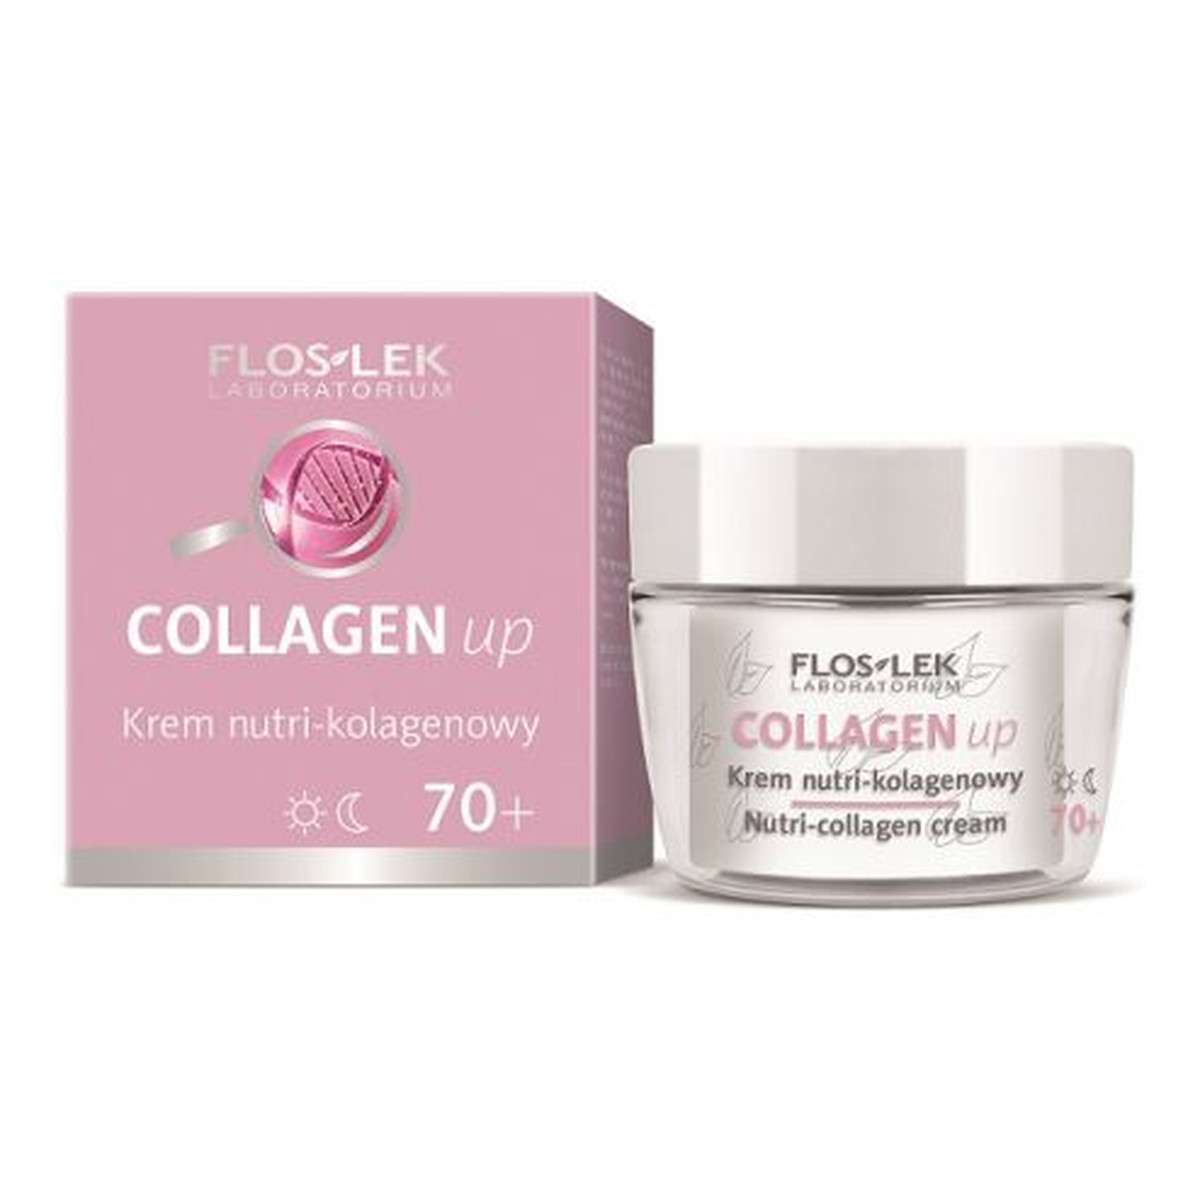 FlosLek Collagen Up Krem nutri kolagenowy na dzień i noc 70+ 50ml